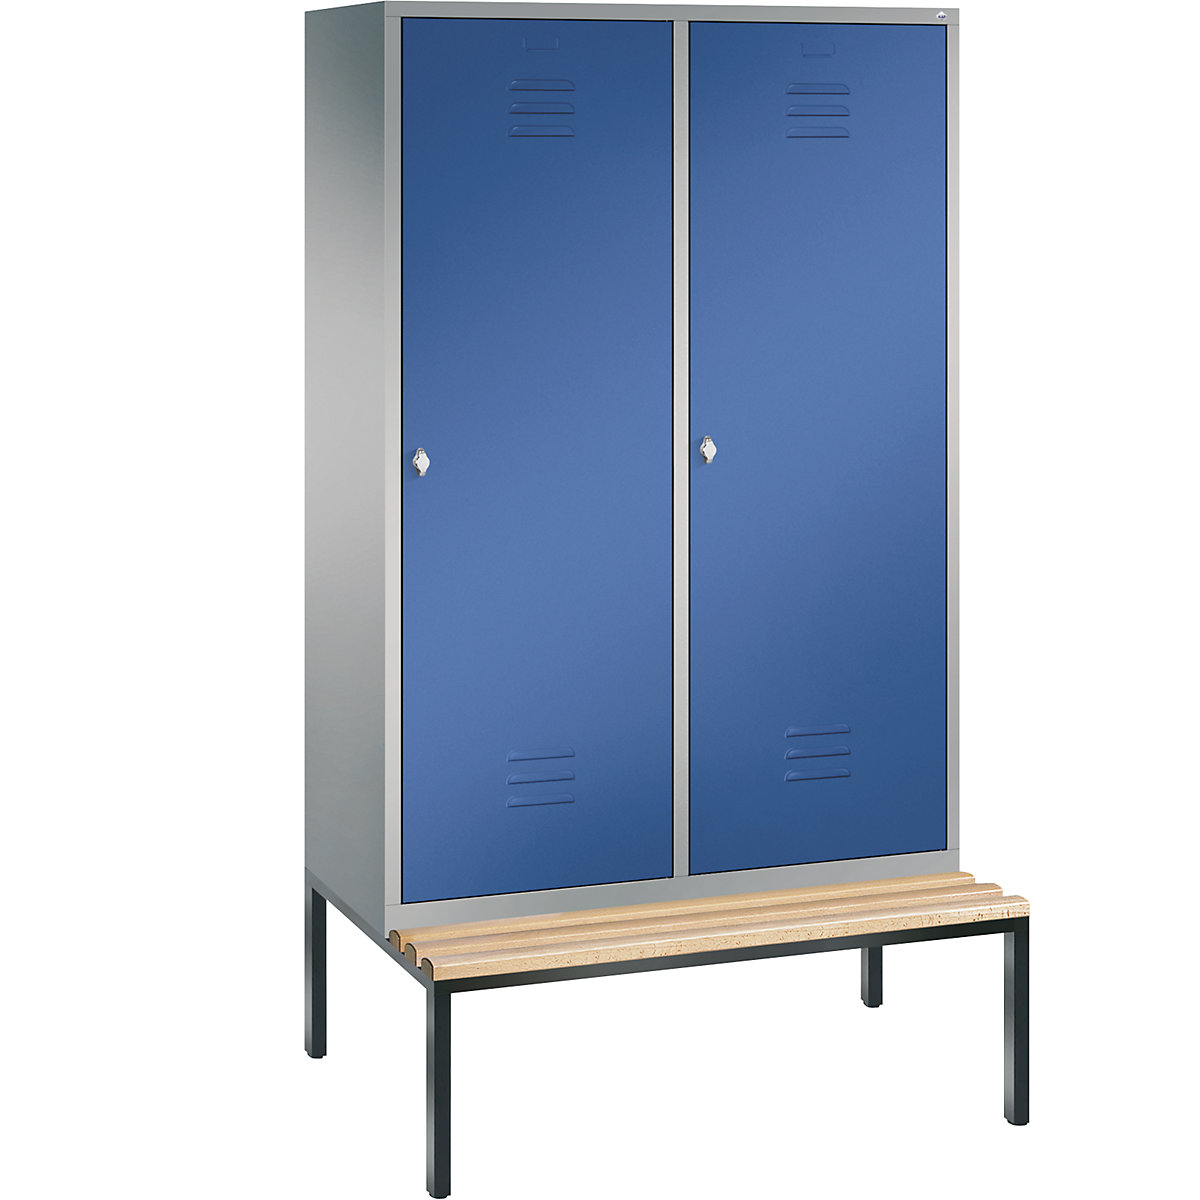 Šatní skříň s podstavnou lavicí CLASSIC s dveřmi přes 2 oddíly – C+P, 4 oddíly, šířka oddílu 300 mm, bílý hliník / enciánová modrá-8